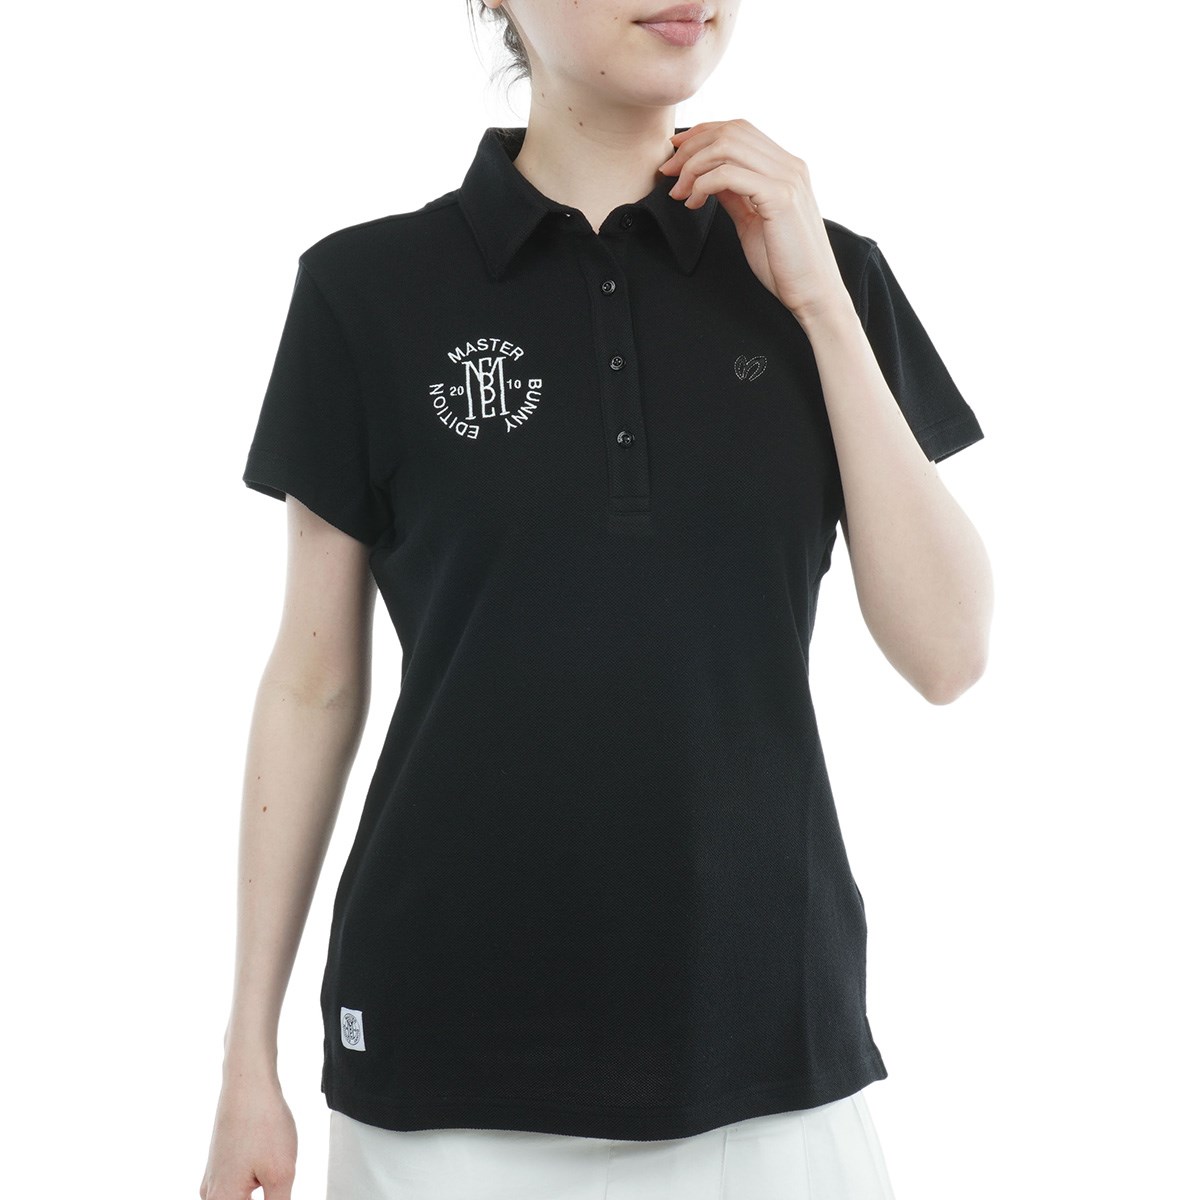 ポロシャツ ウェア マスターバニー ゴルフの人気商品・通販・価格比較 